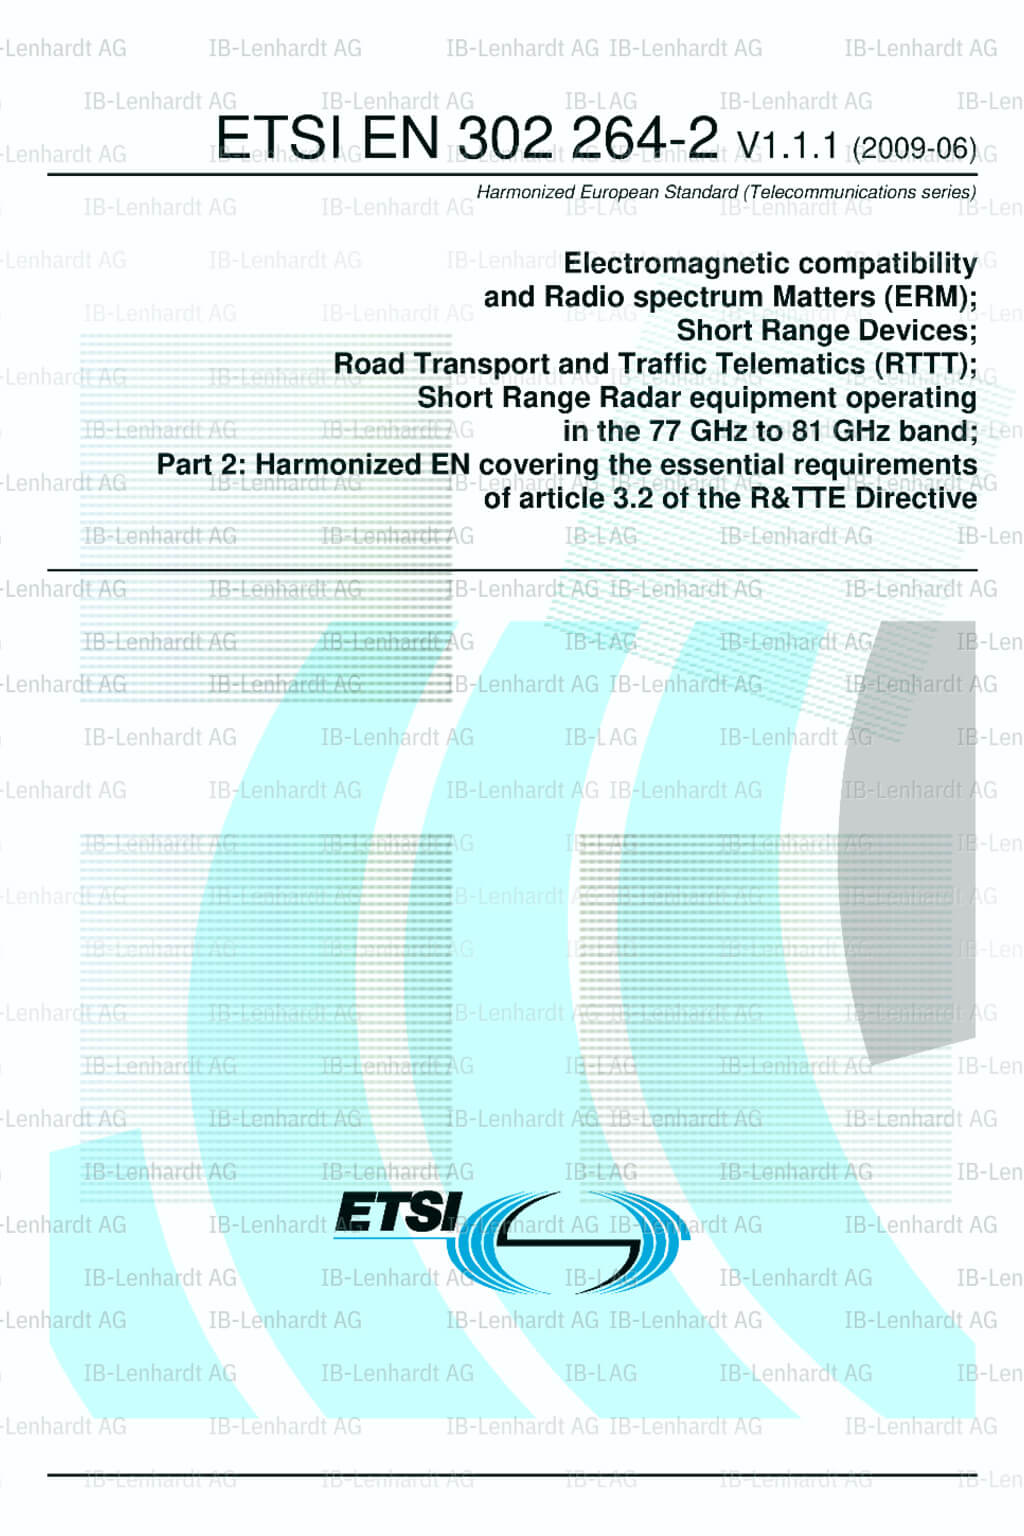 ETSI EN 302 264-2 V1.1.1